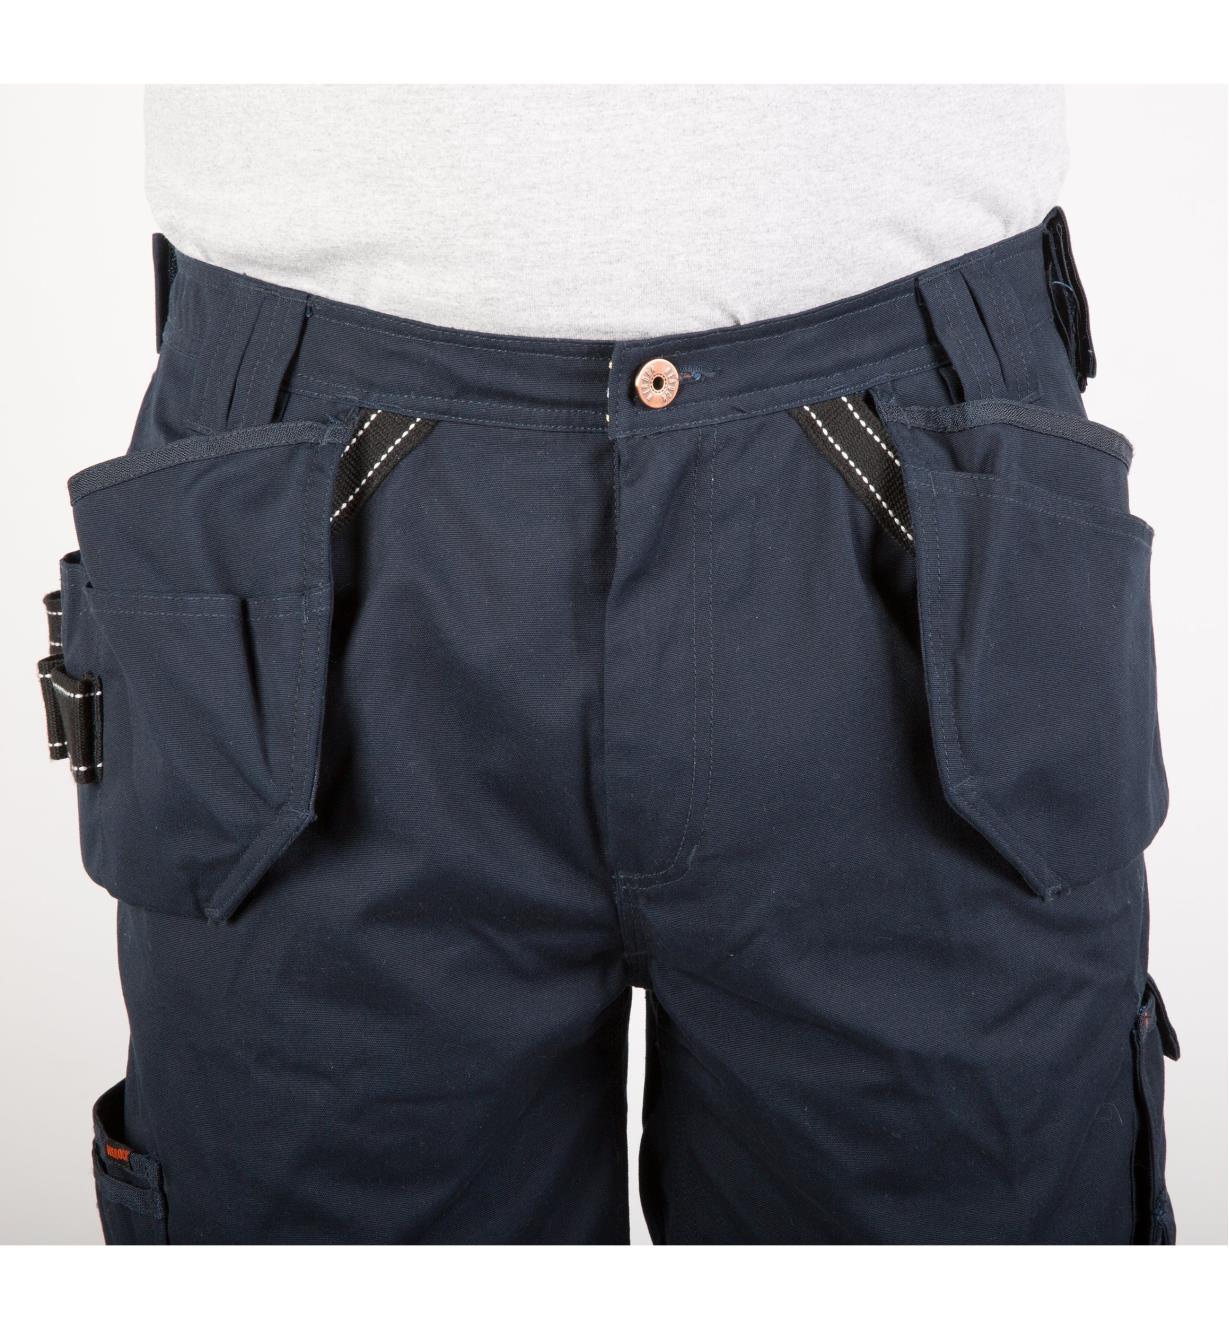 Herock Work Wear – Pallas Shorts